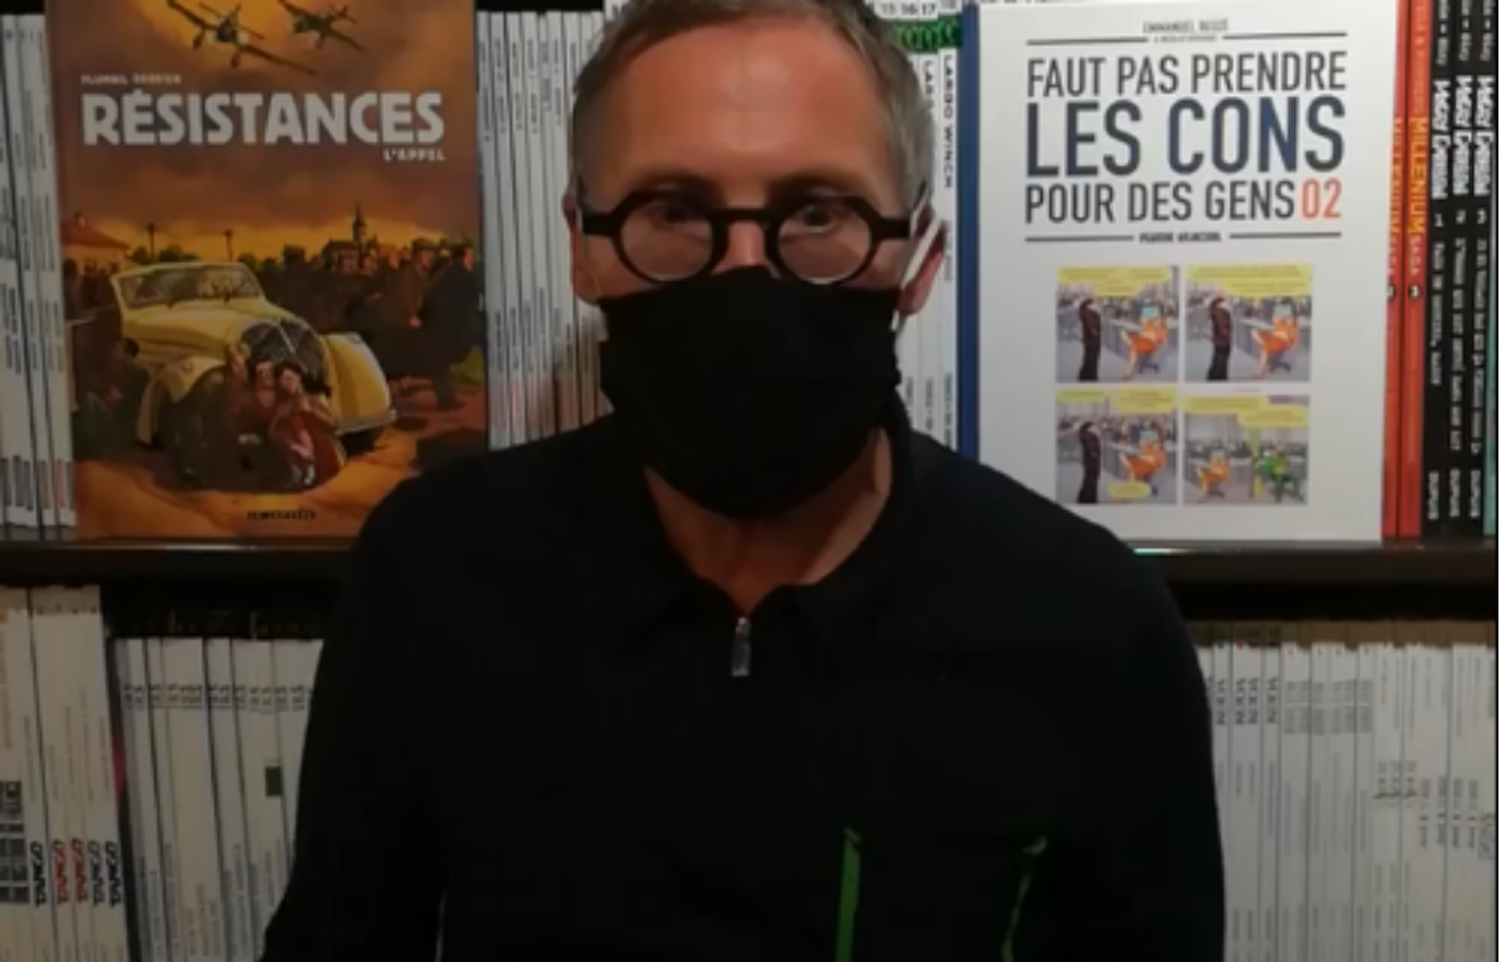 La France en confinement : la librairie "Bulle" au Mans entre en résistance...